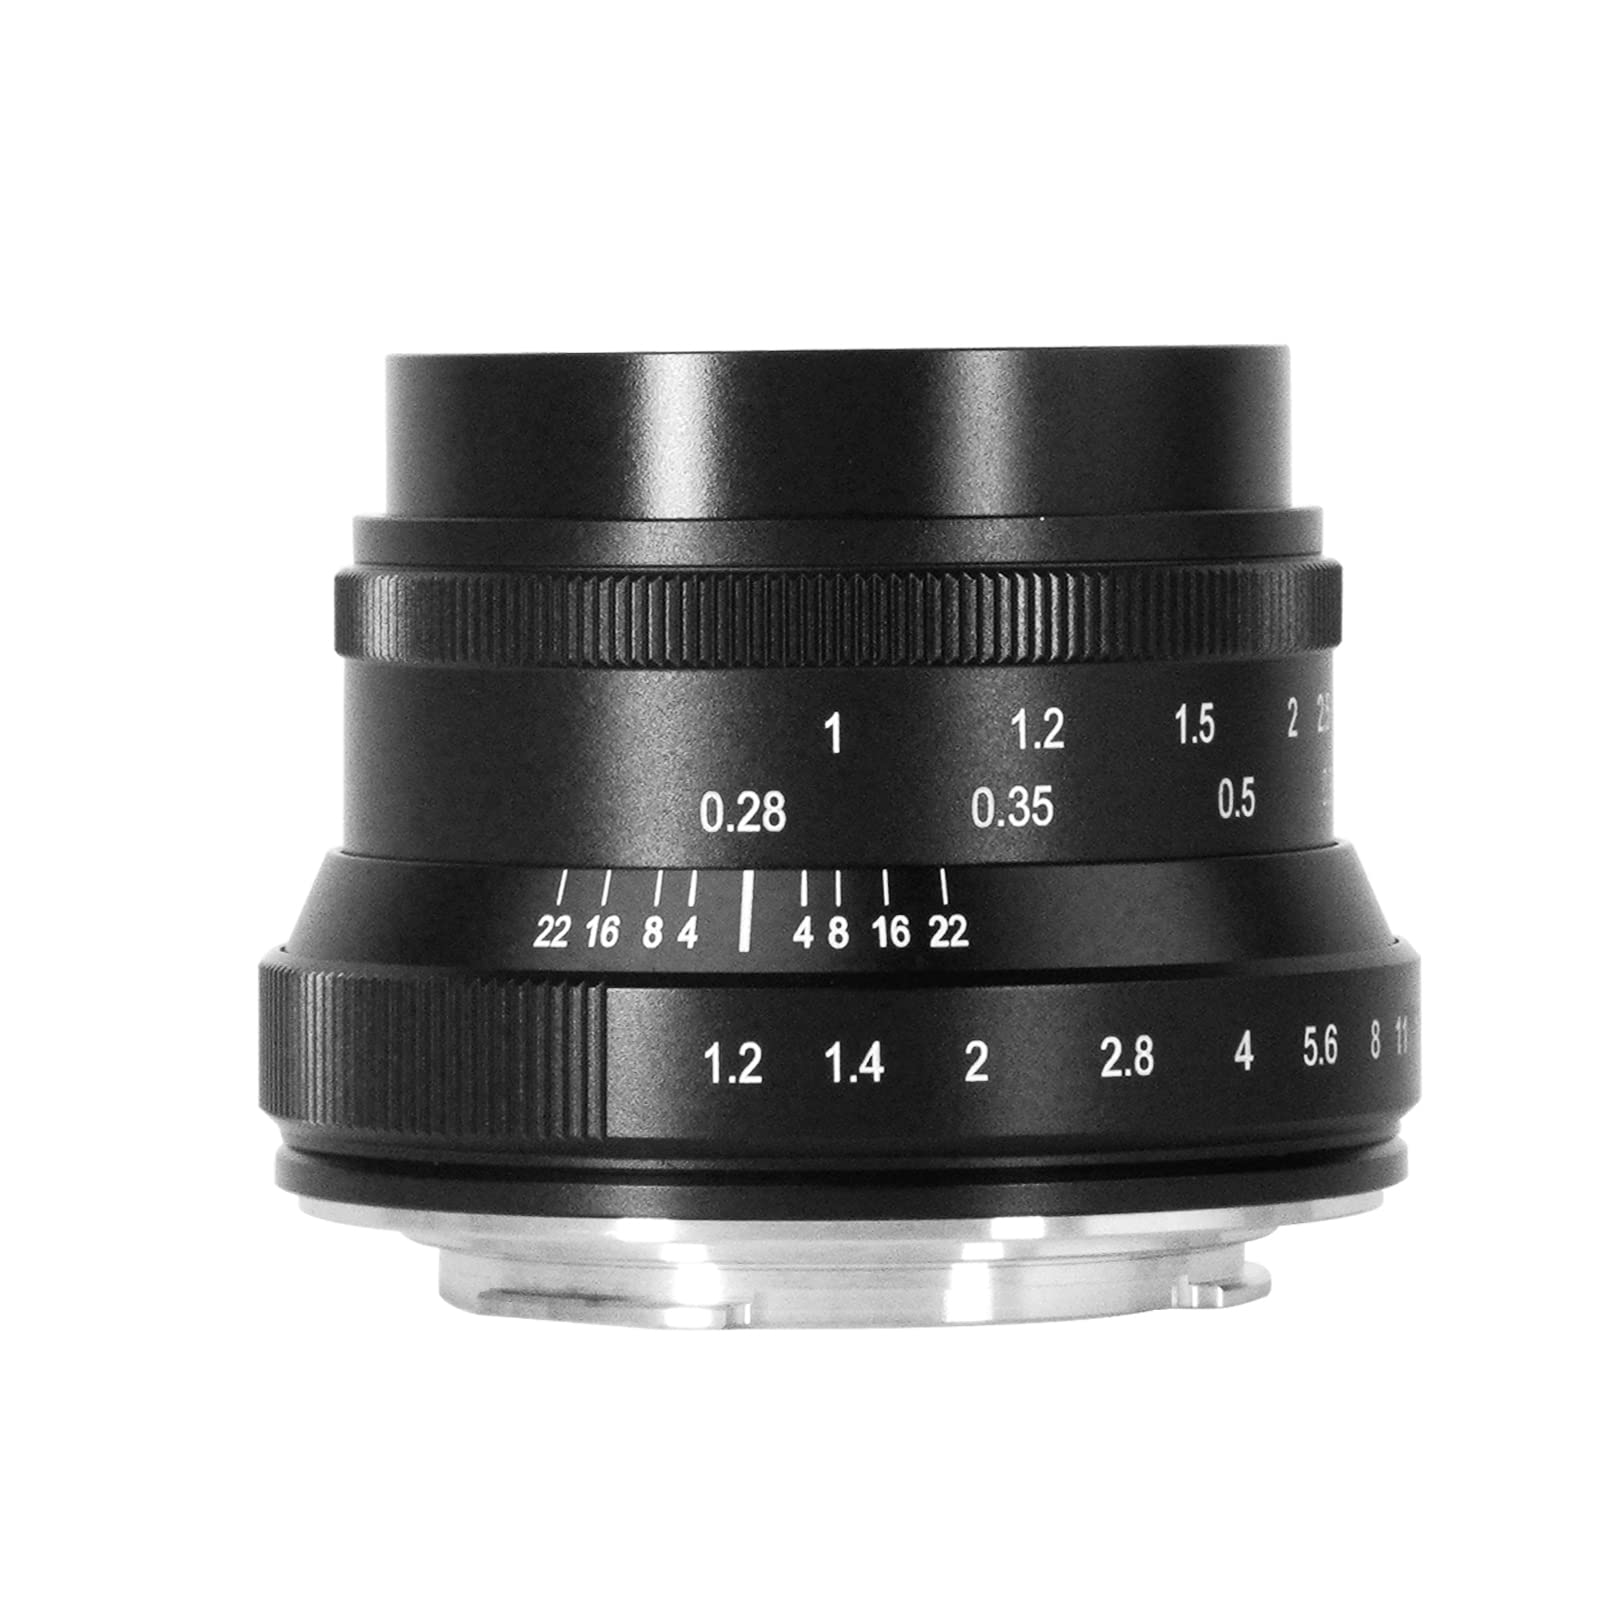 7artisans 35mm f1.2 Mark II APS-C Geklickte größere Blende Festbrennweite passend für Nikon Z-Mount spiegellose Kompaktkameras für Nikon Z6 Z7 Z50